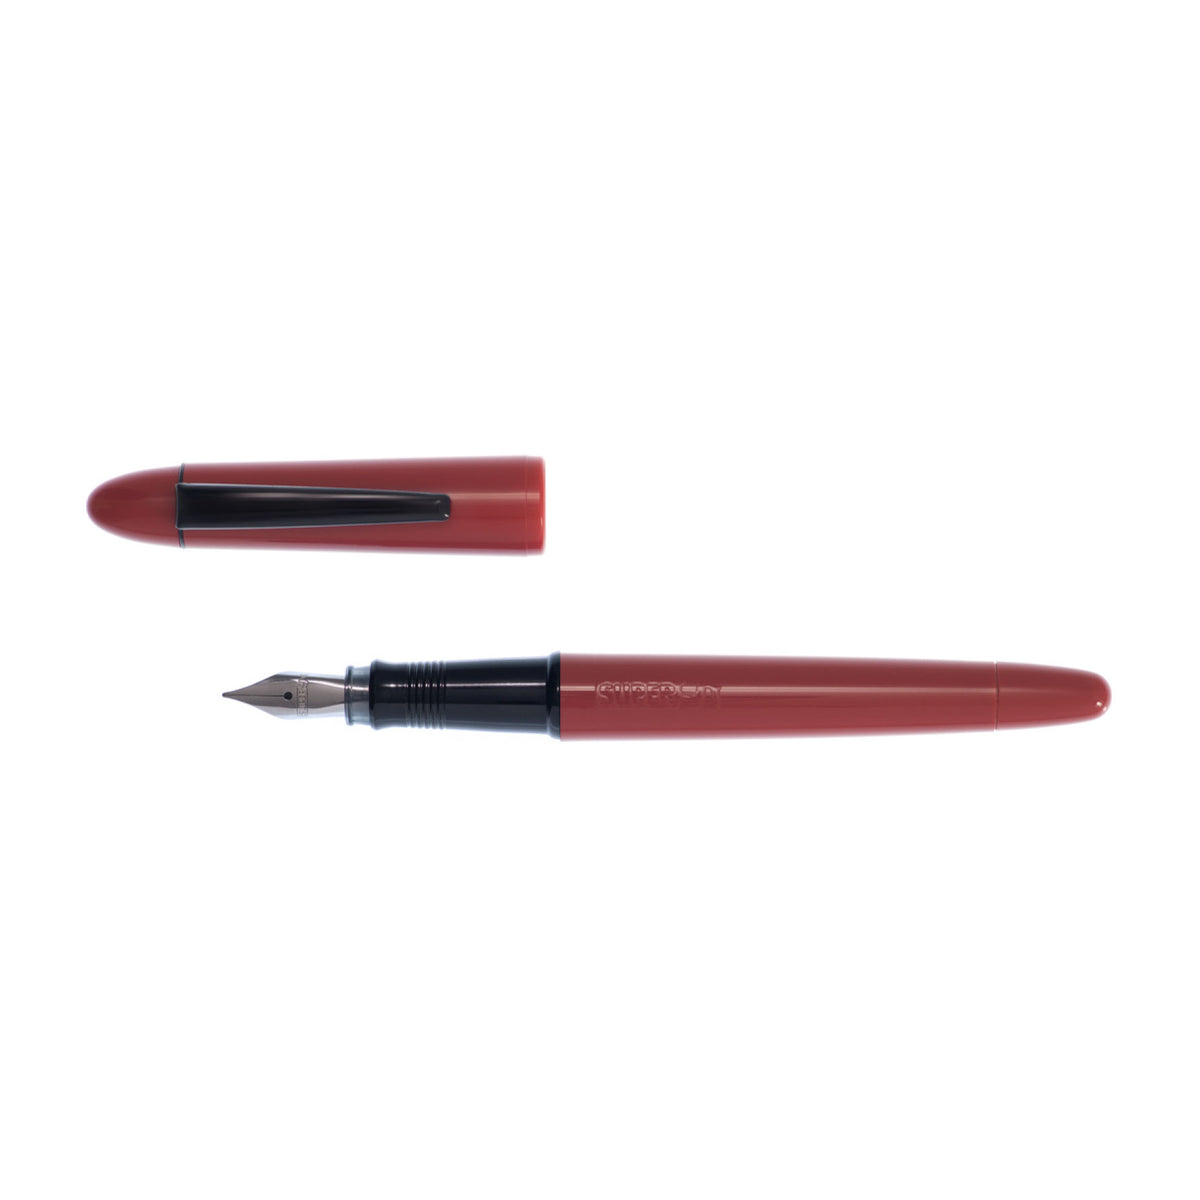 Super5 - Fountain Pen - Australia (Red)